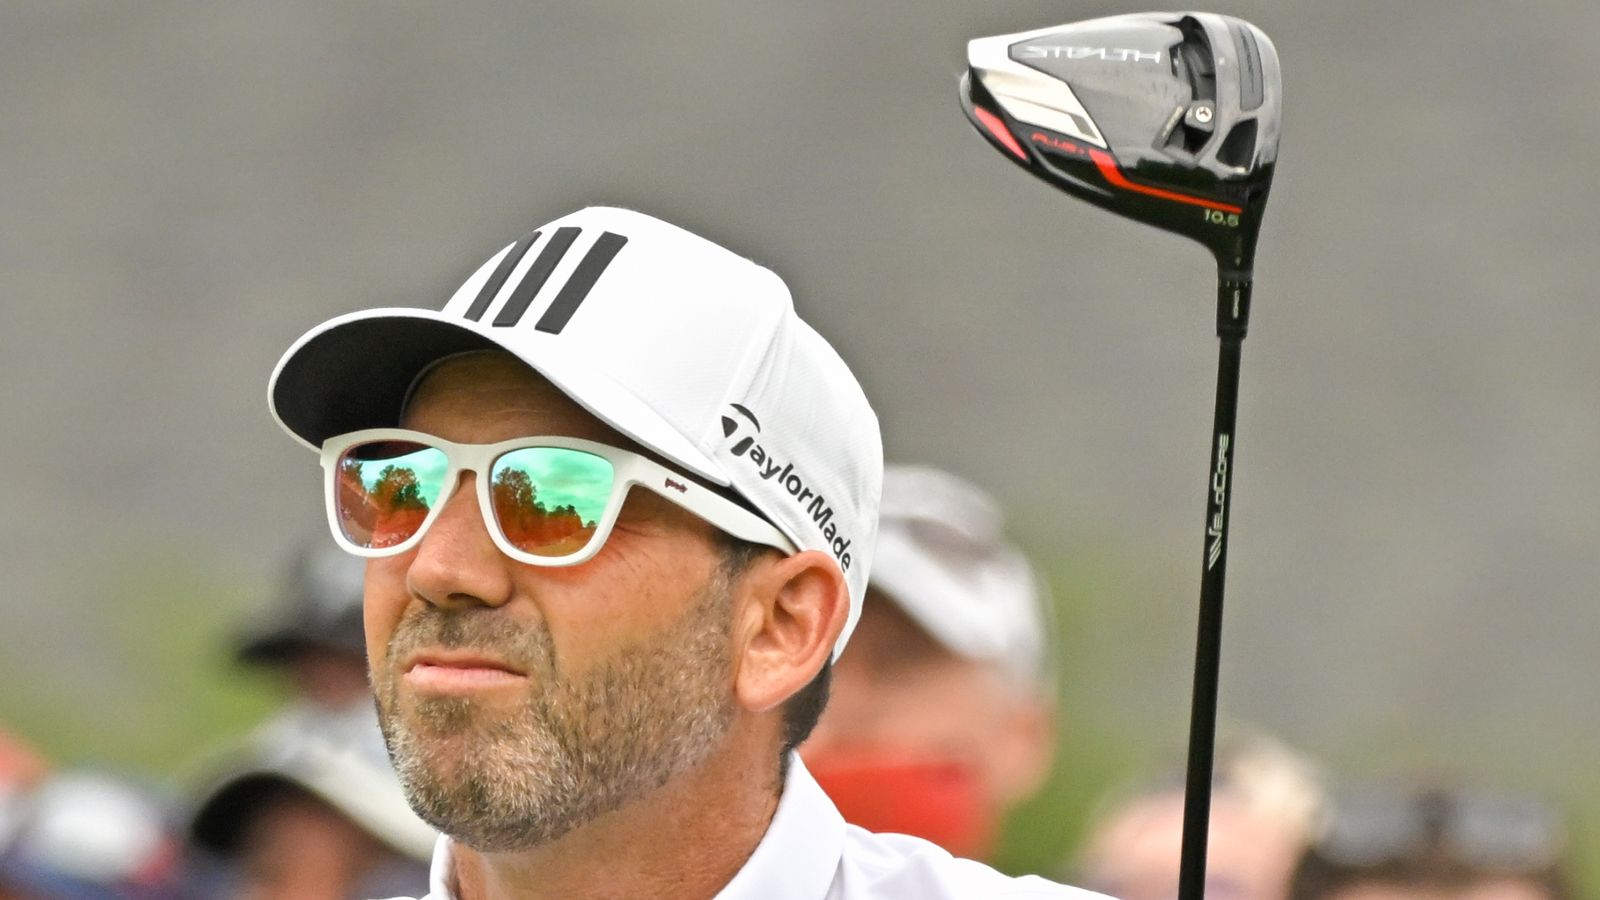 Sergio Garcia suggère de transférer la série saoudienne à l’officiel du PGA Tour : « J’ai hâte de quitter cette tournée » |  nouvelles du golf